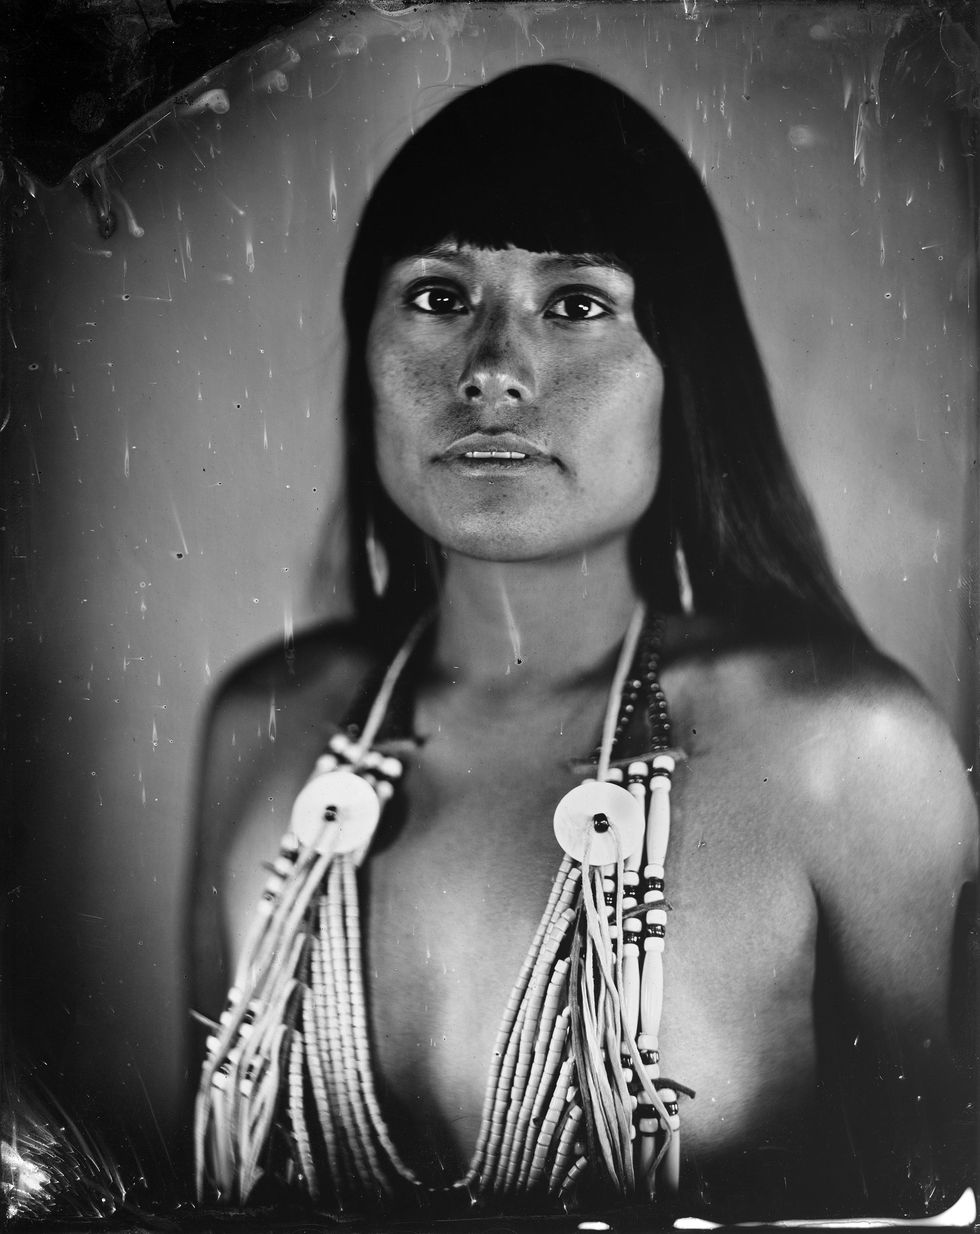 Angel Mills is een genderflude lid van de Oglala Lakotagemeenschap en poseert hier voor een tintypefoto die werd gemaakt om het lichaam weer te geven waarin Angel werd geboren en het spectrum van mannelijkheid en vrouwelijkheid